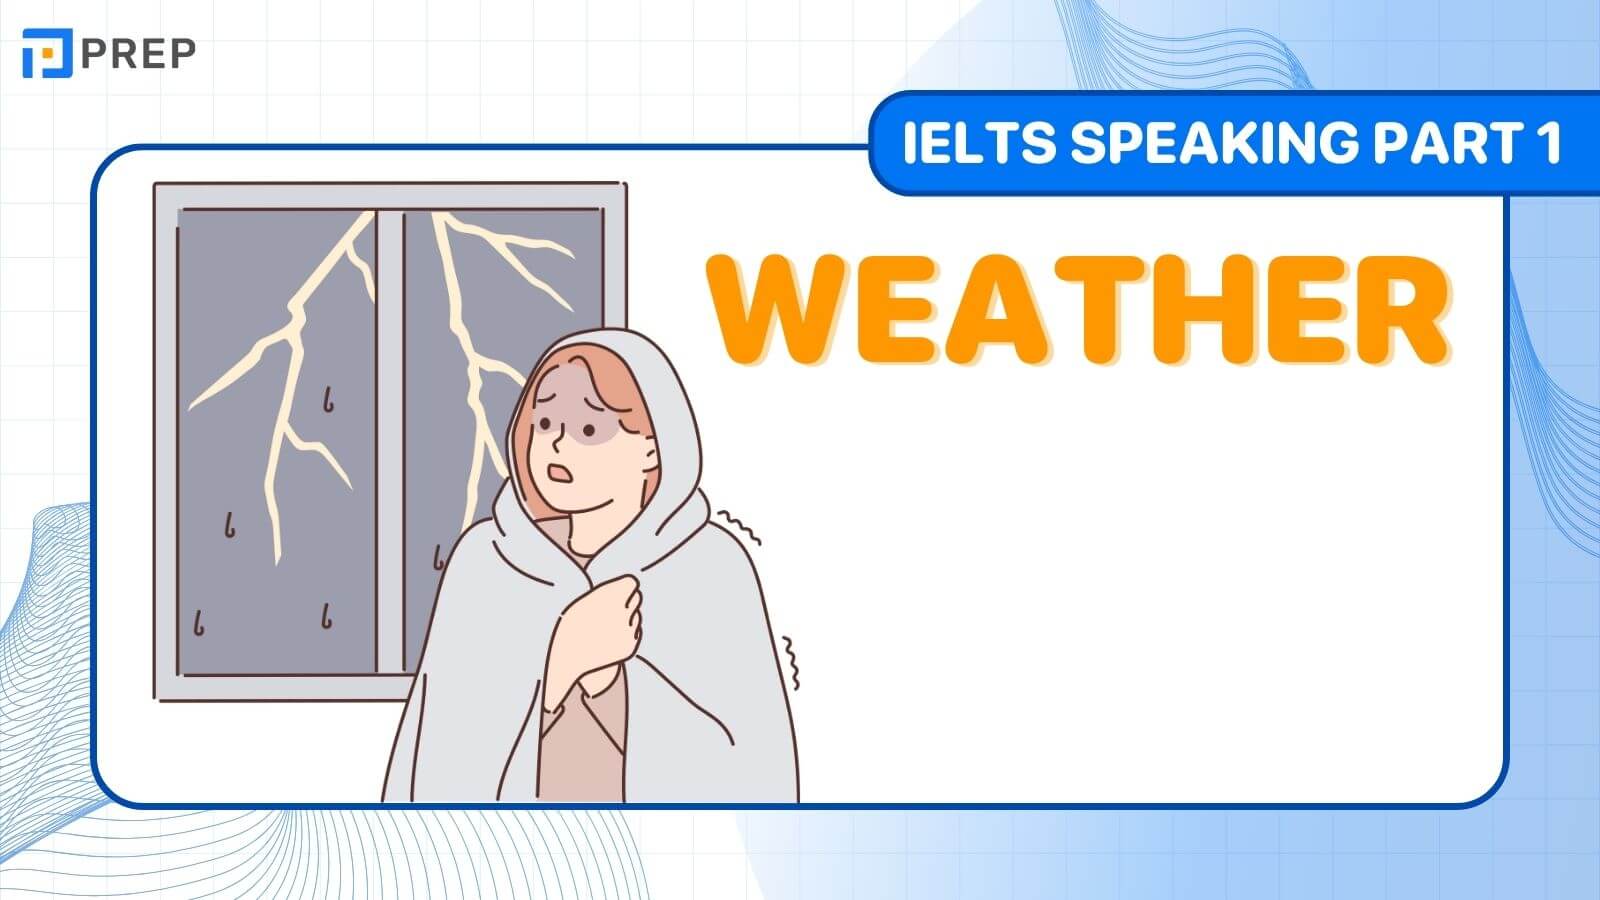 Đề bài, câu trả lời mẫu IELTS Speaking Part 1 chủ đề: Weather